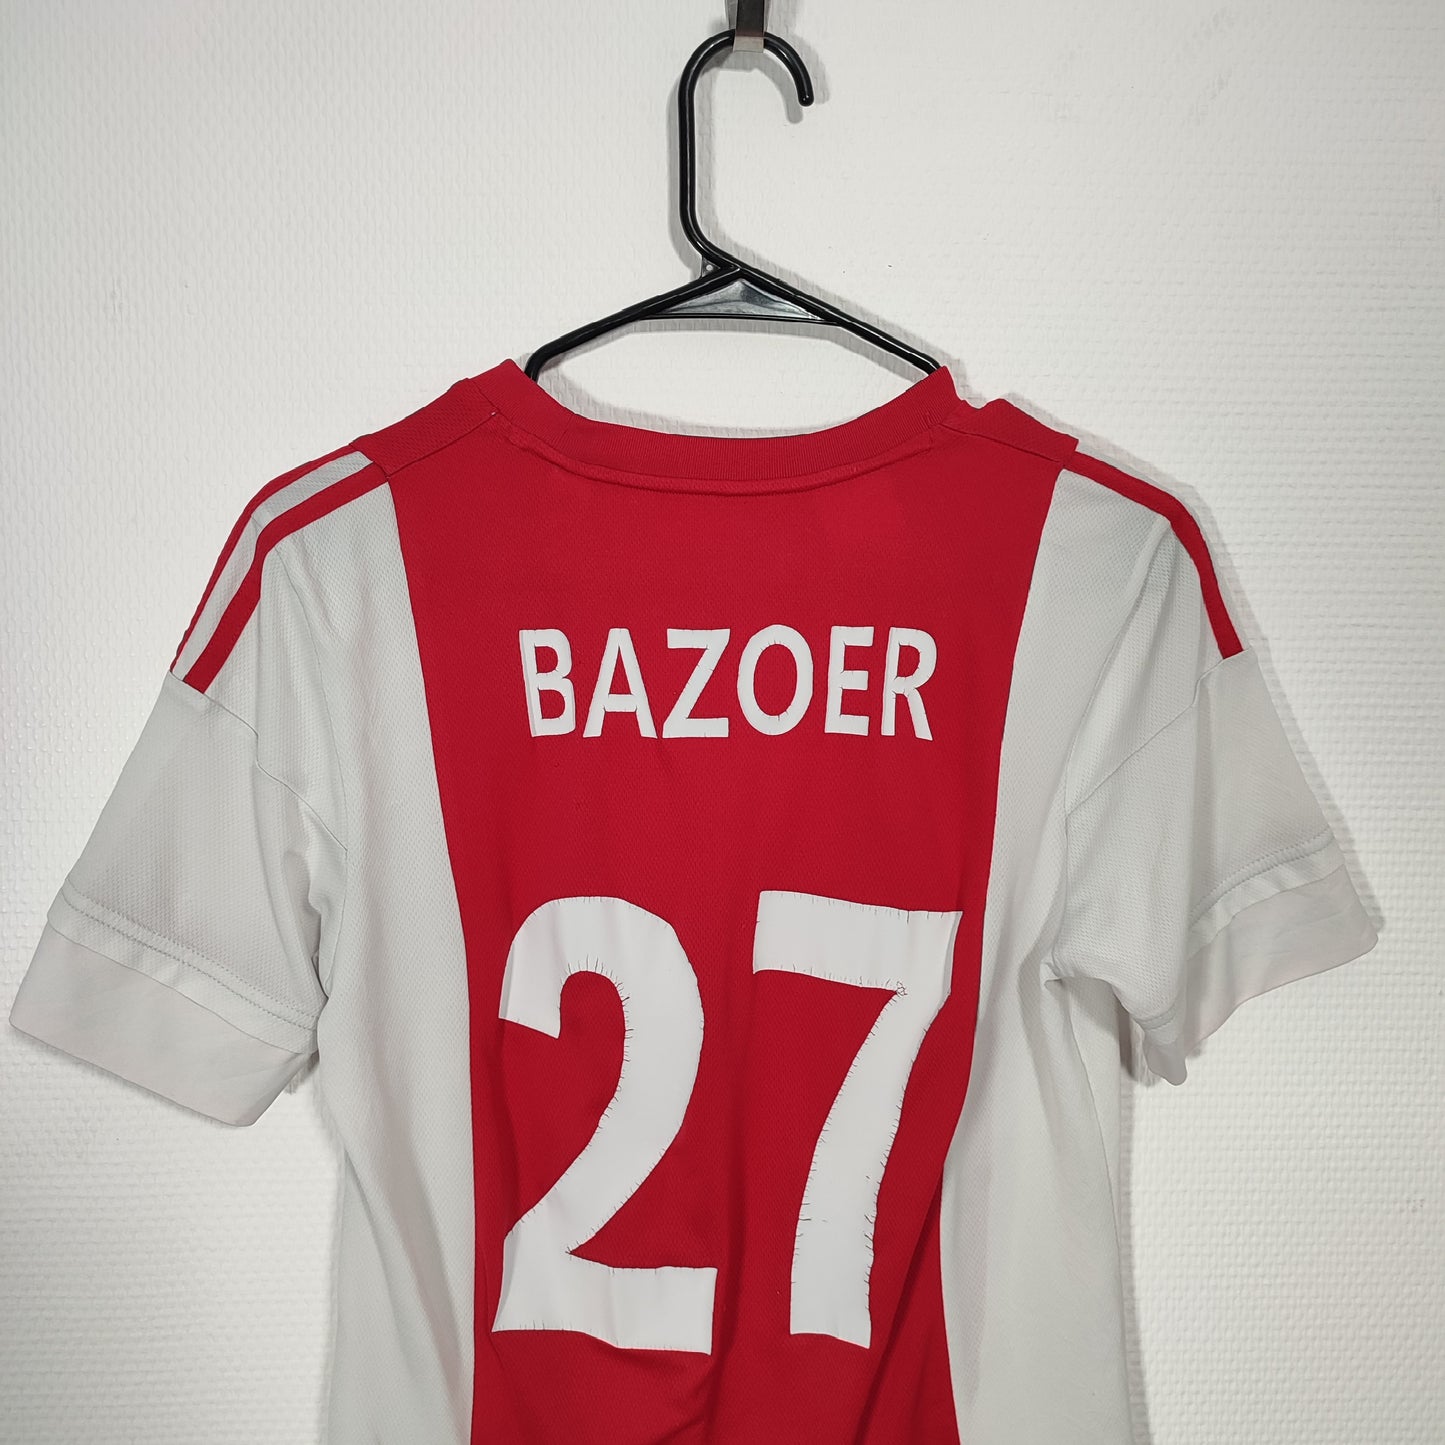 Maillot de foot Ajax "Bazoer" - XS